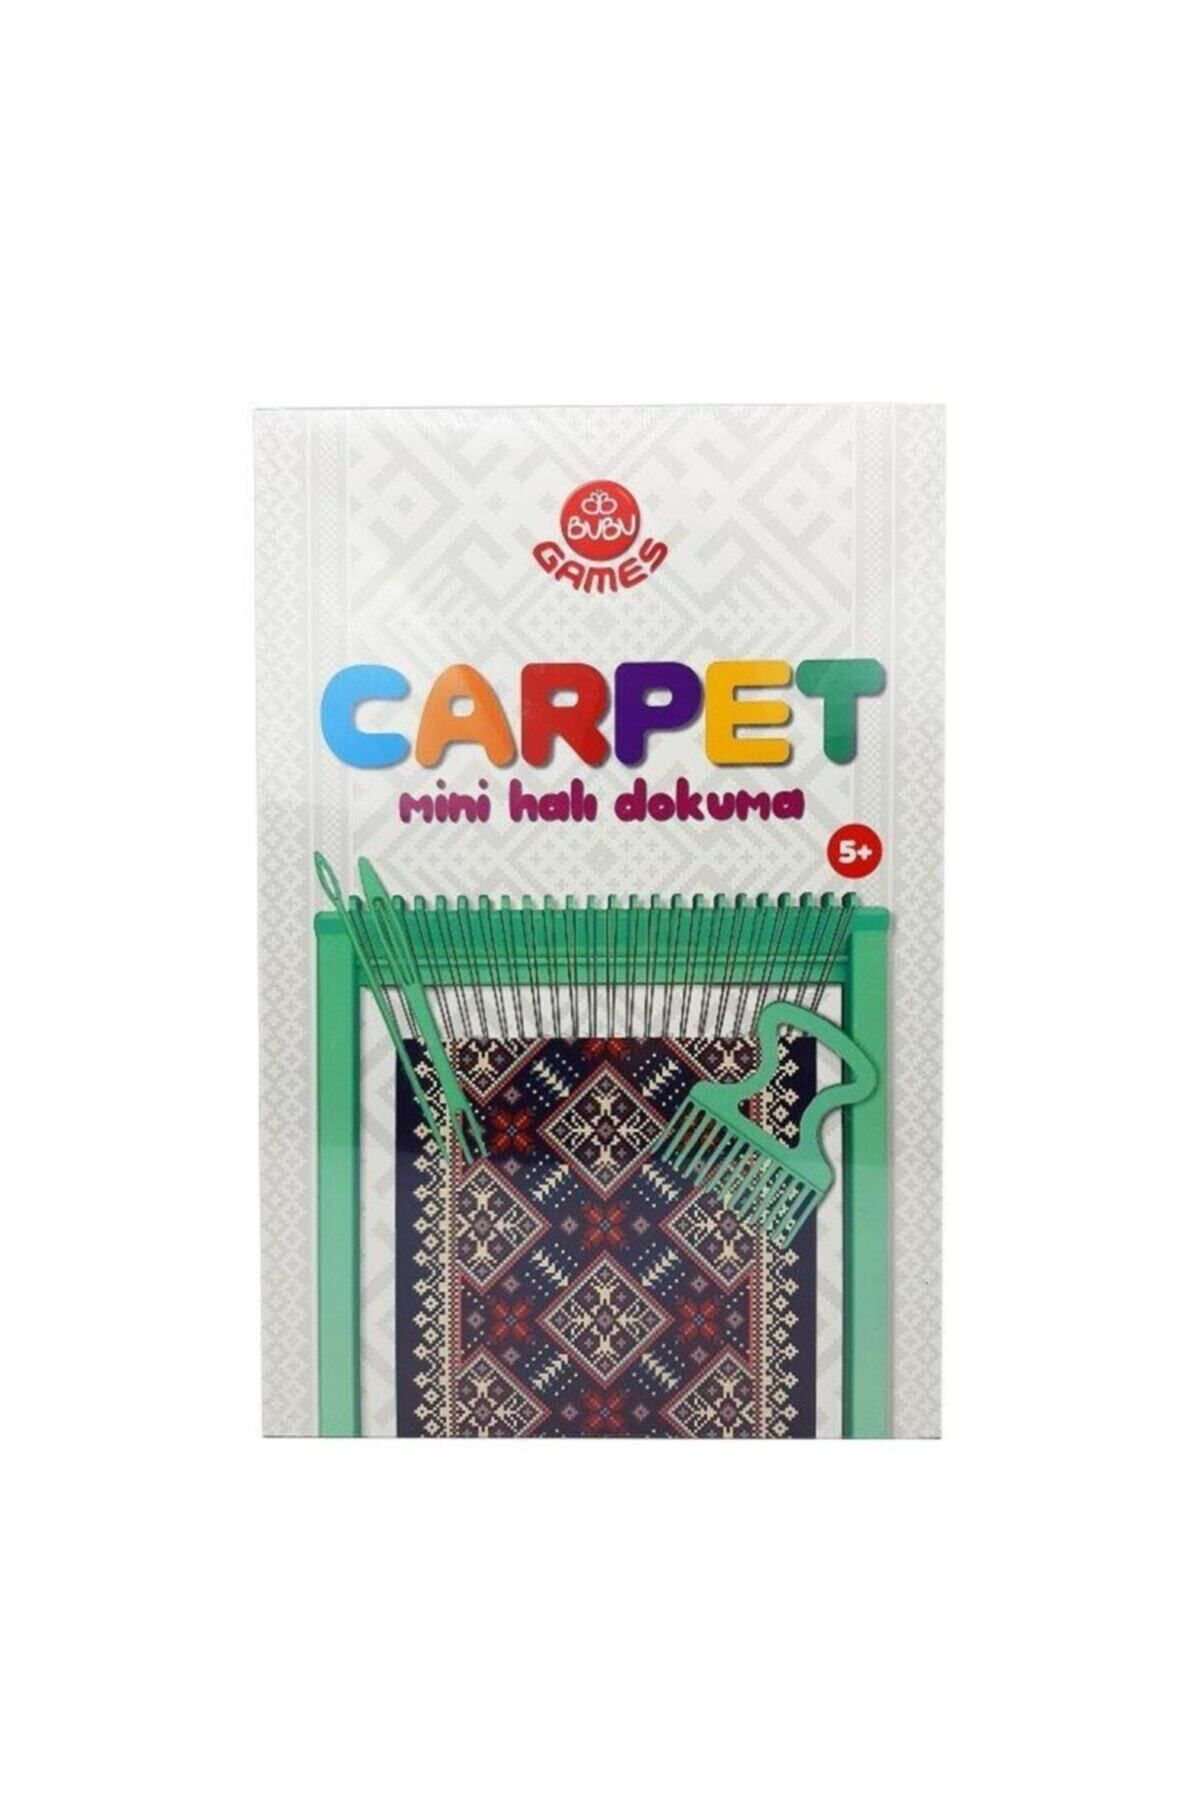 Bubu Games Carpet (halı Dokuma)